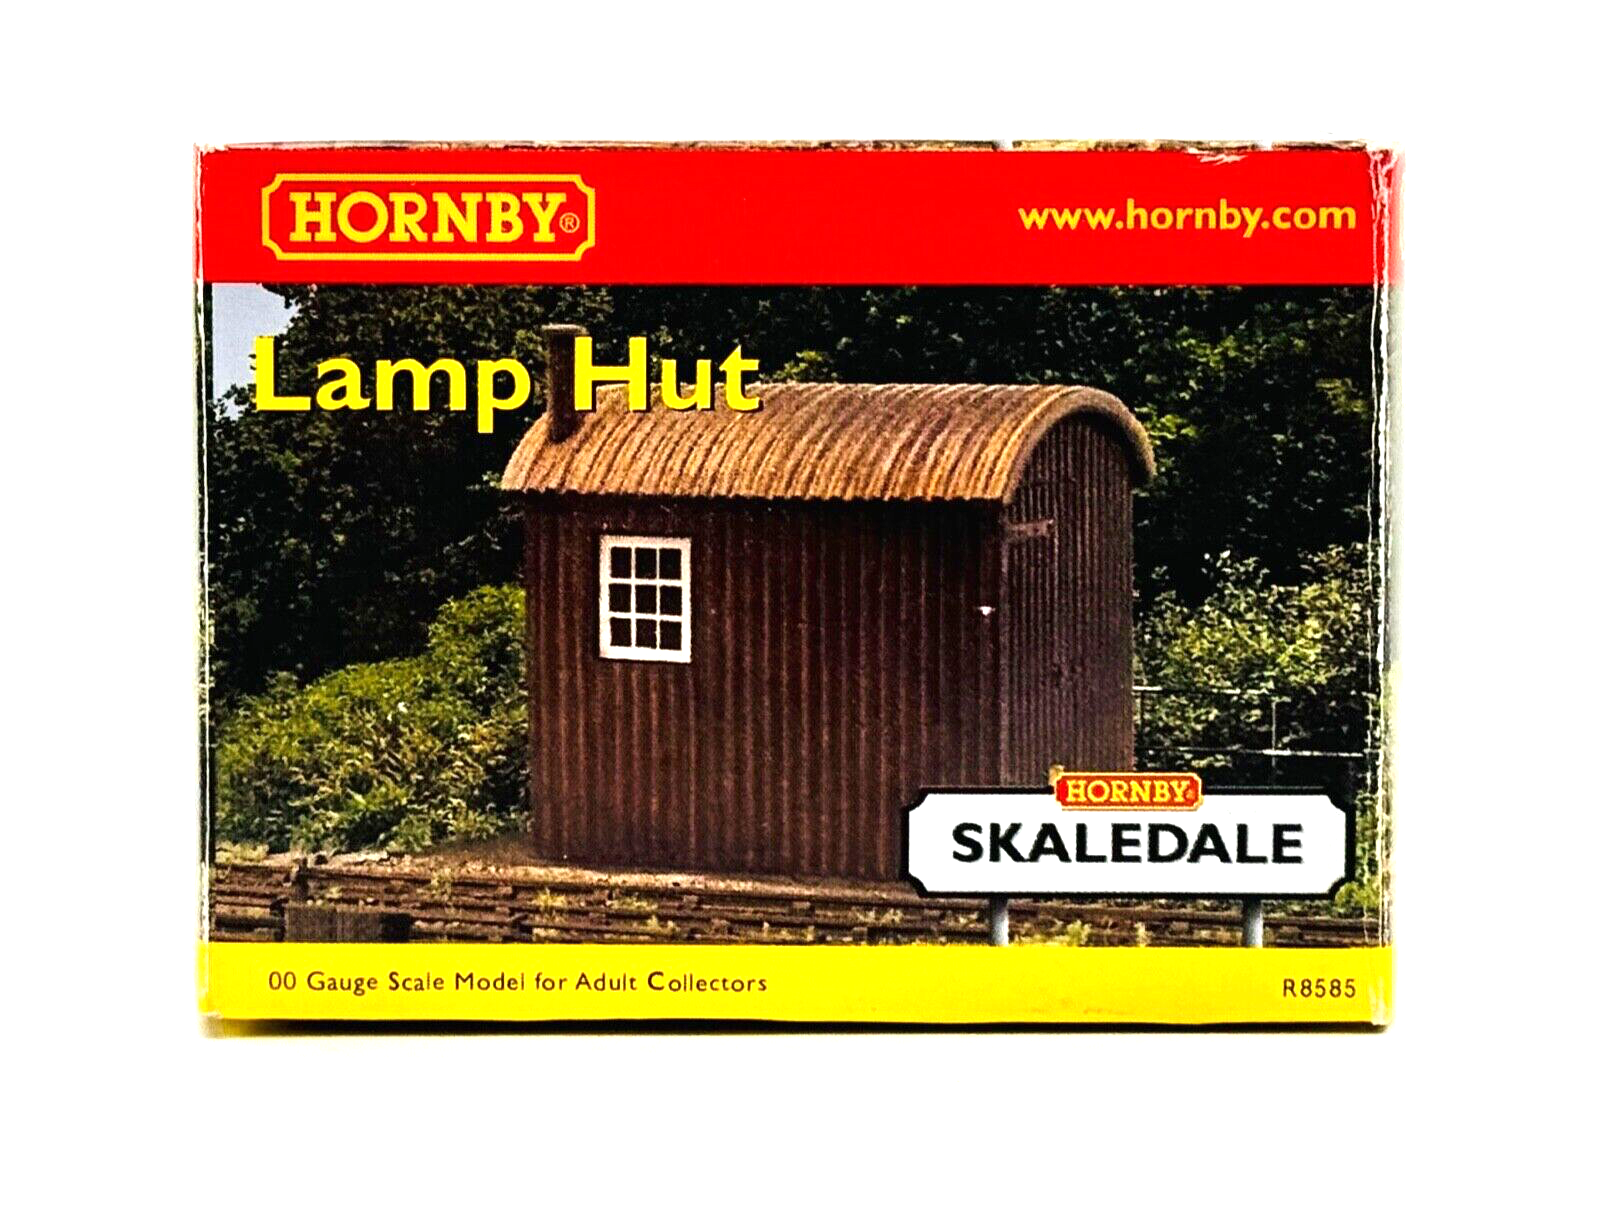 HORNBY 00 GAUGE SKALEDALE - R8585 - LAMP HUT - NEW BOXED